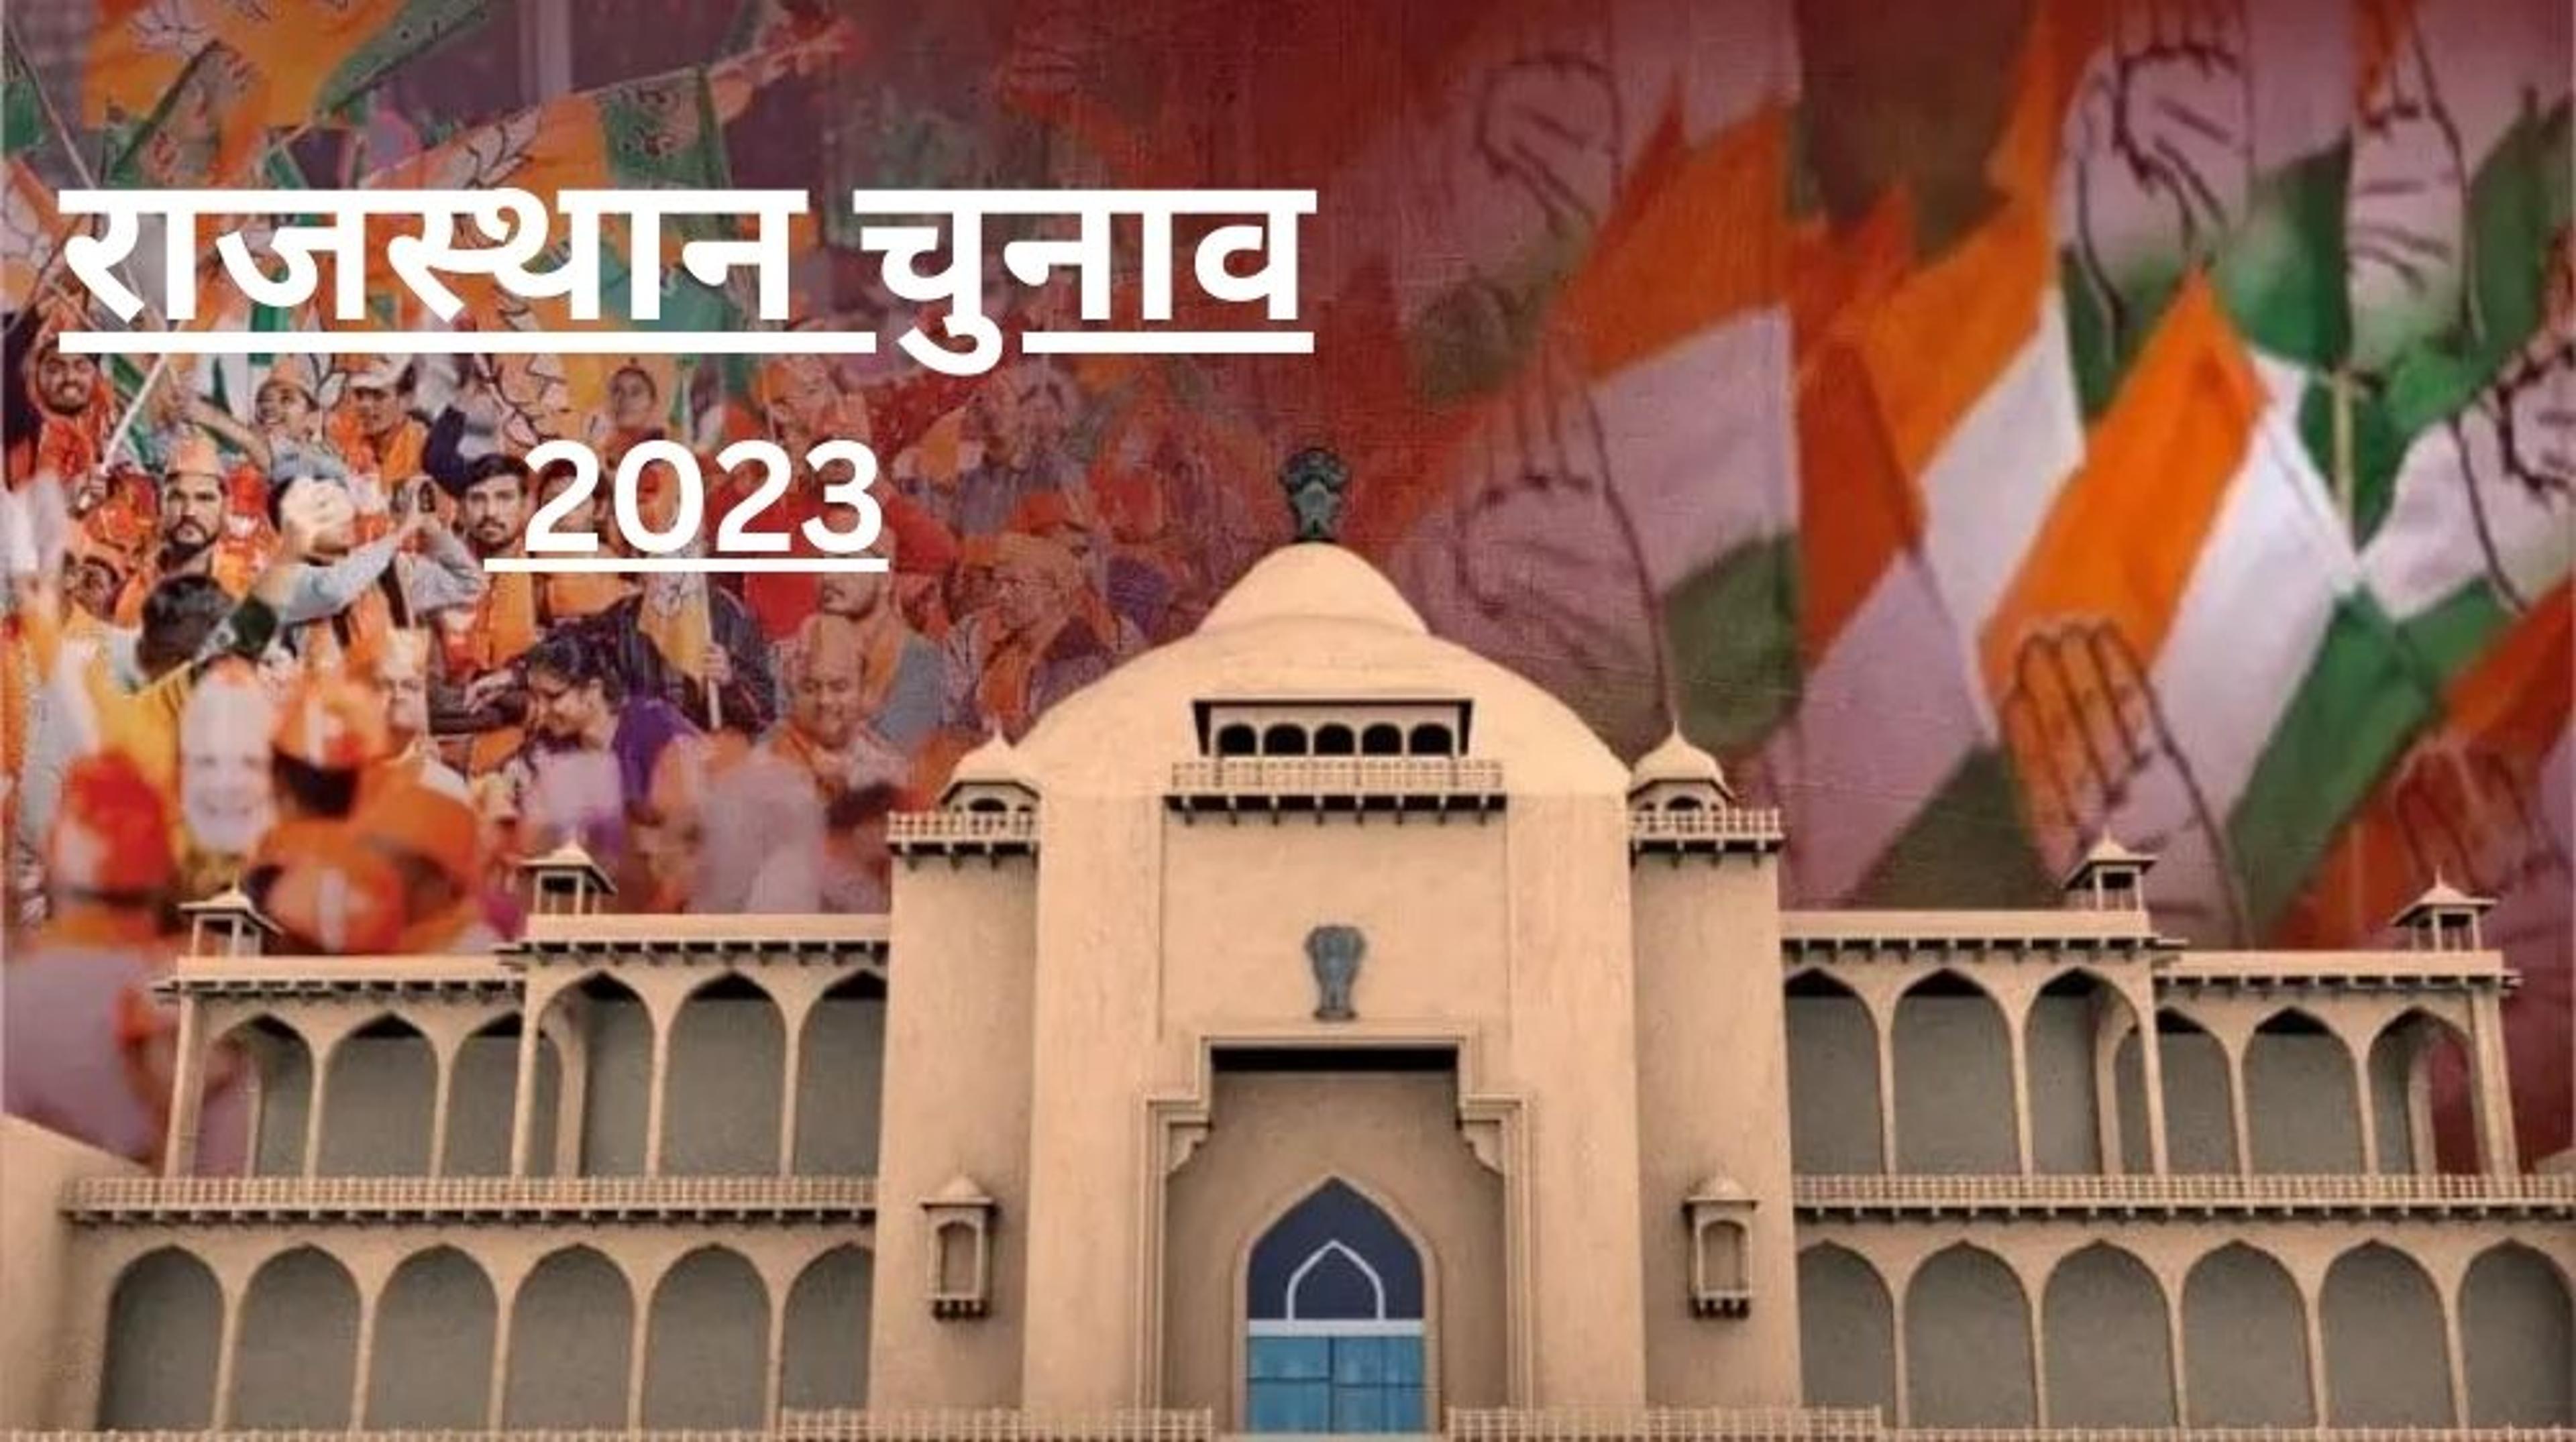 Rajasthan Assembly Election Result 2023: राजस्थान में निर्वाचन विभाग ने जारी किया आंकड़ा, जानें कौन आगे, देखें वीडियो